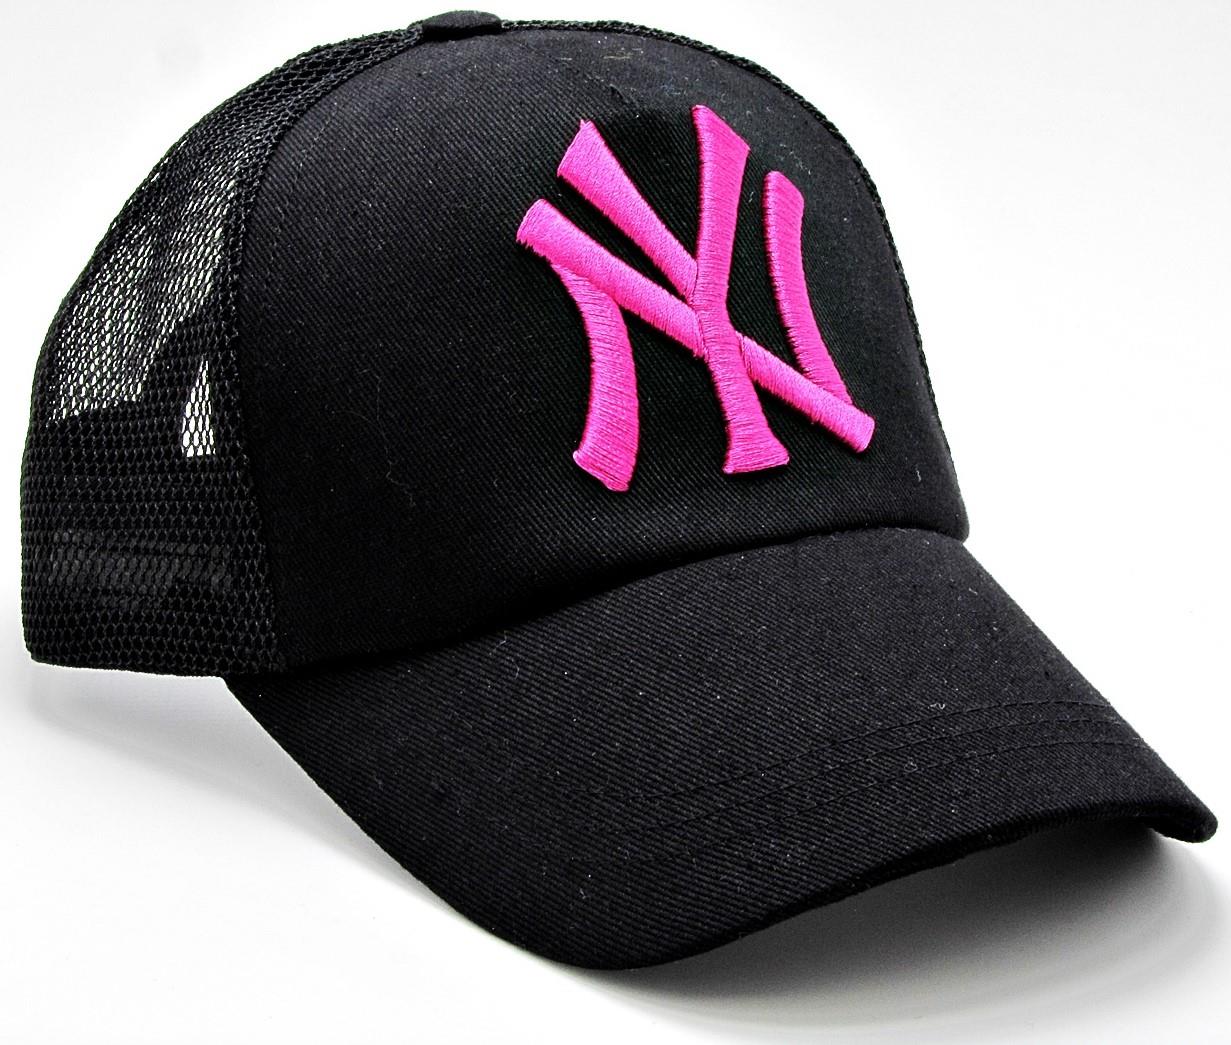 NY Cap Yazlık Fileli Unisex Şapka cp222 - Siyah Pembe Yazılı